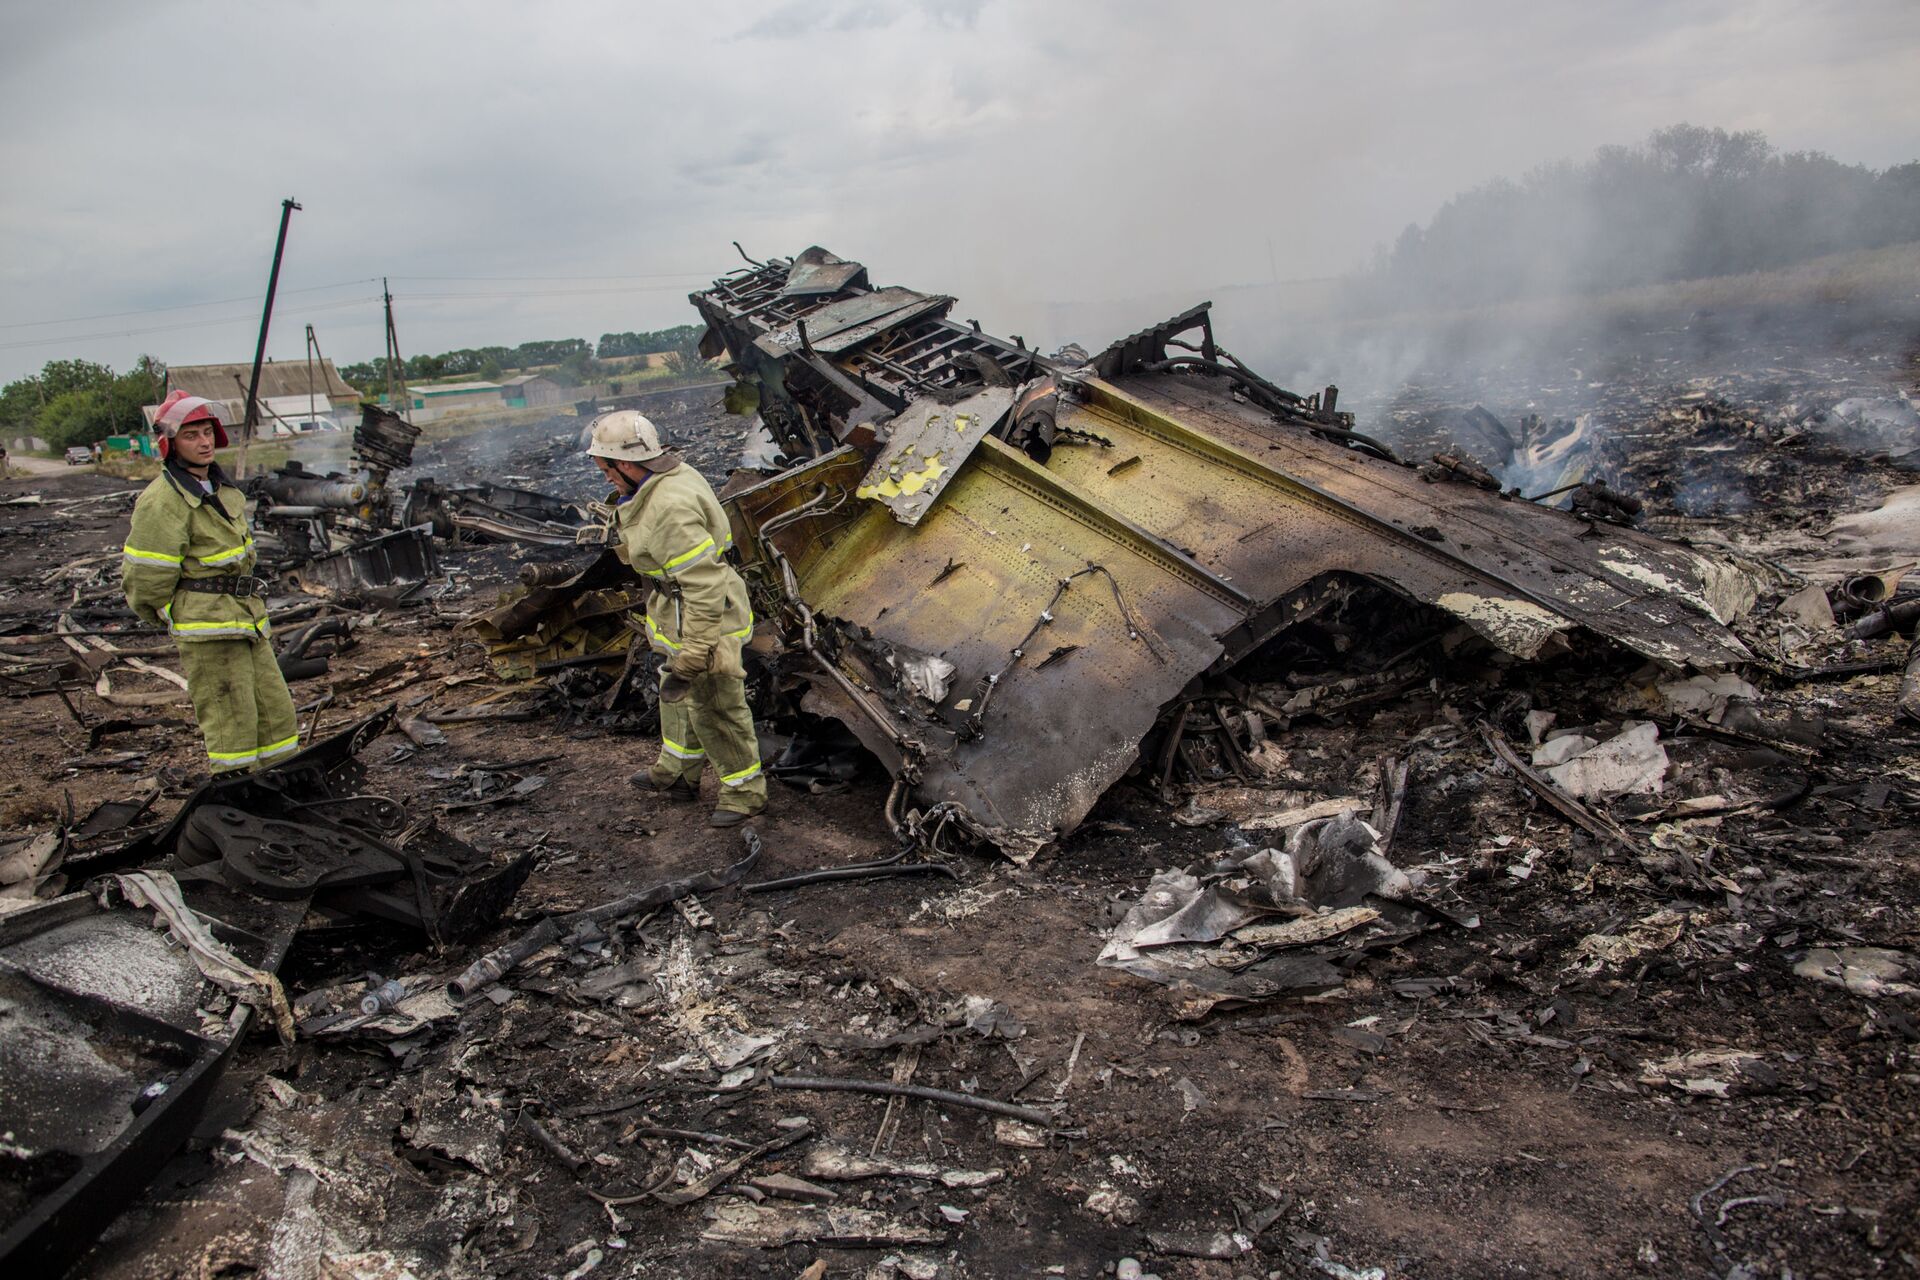 Equipes de resgate no local da queda do MH17 no leste da Ucrânia - Sputnik Brasil, 1920, 16.11.2022